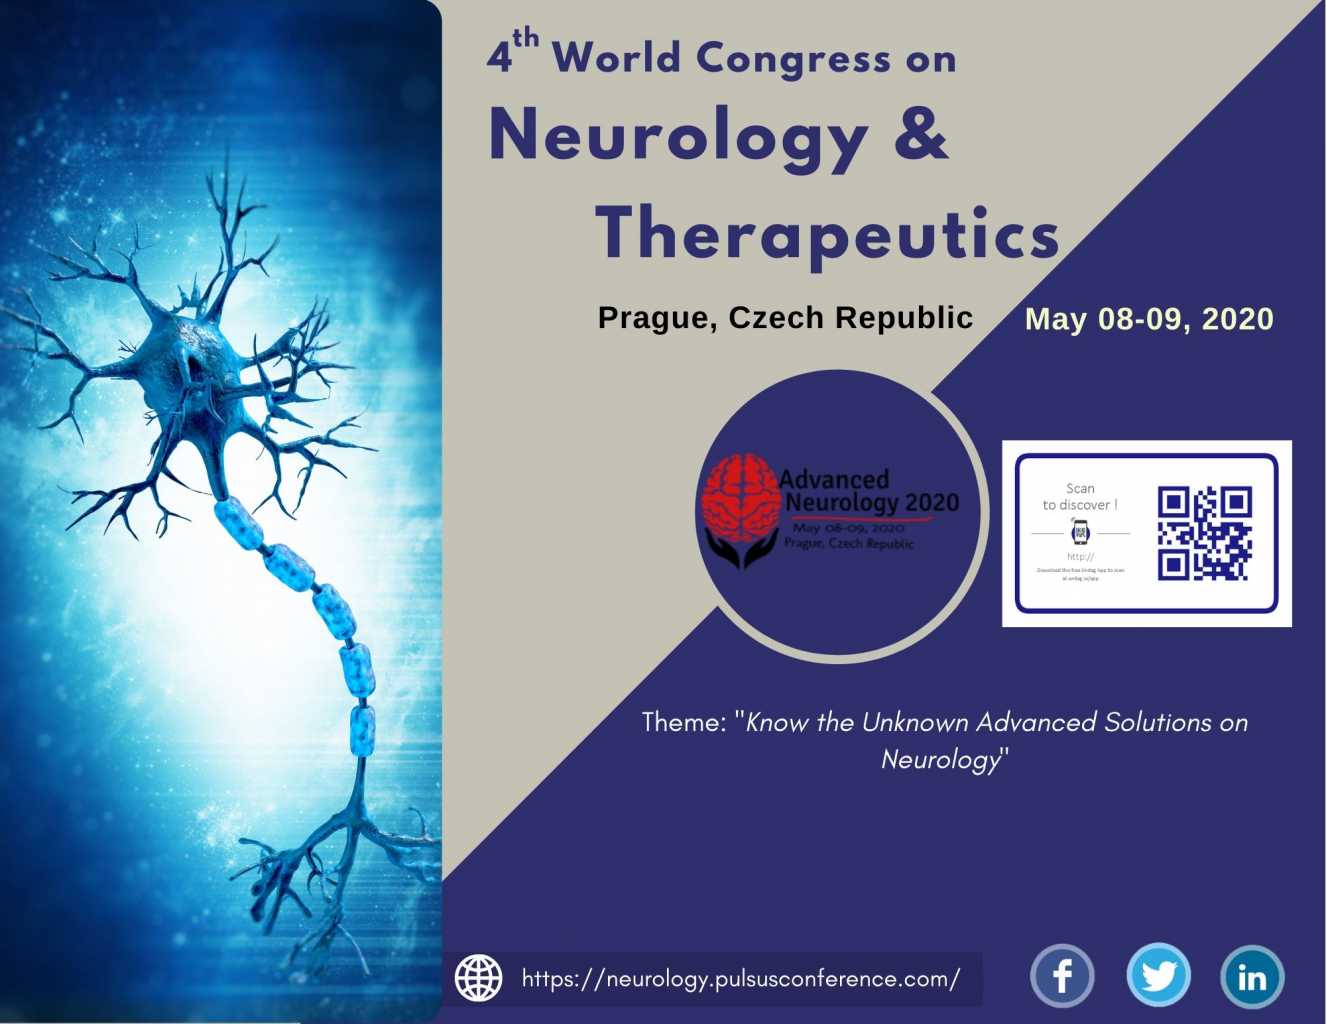 Neurology Conference 4th World Congress on Neurology 2020 Prague